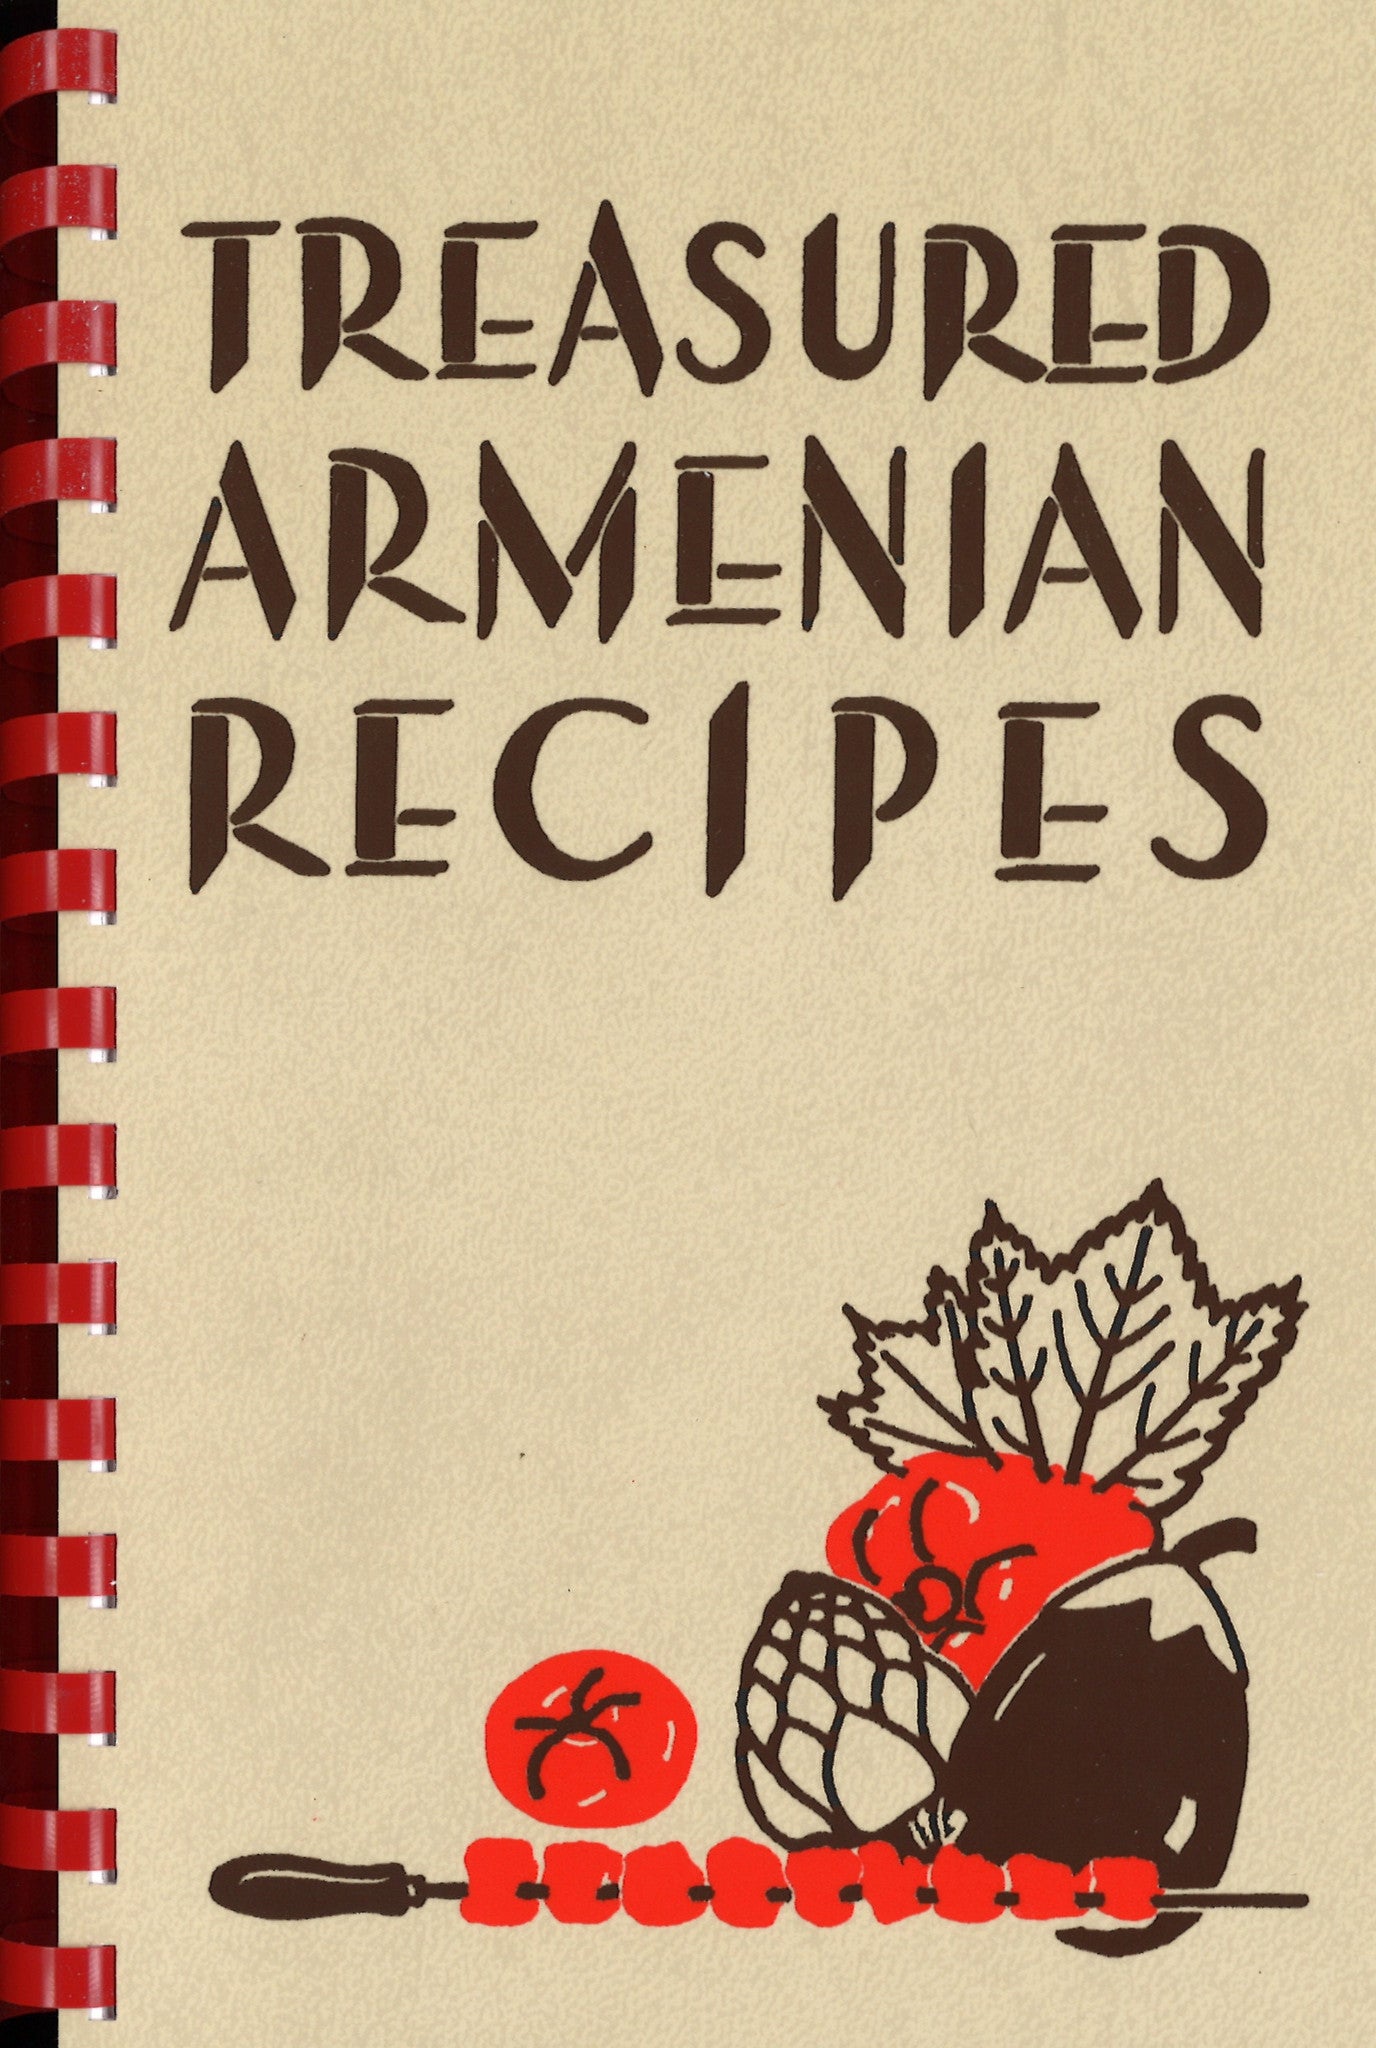 TREASURED ARMENIAN RECIPES